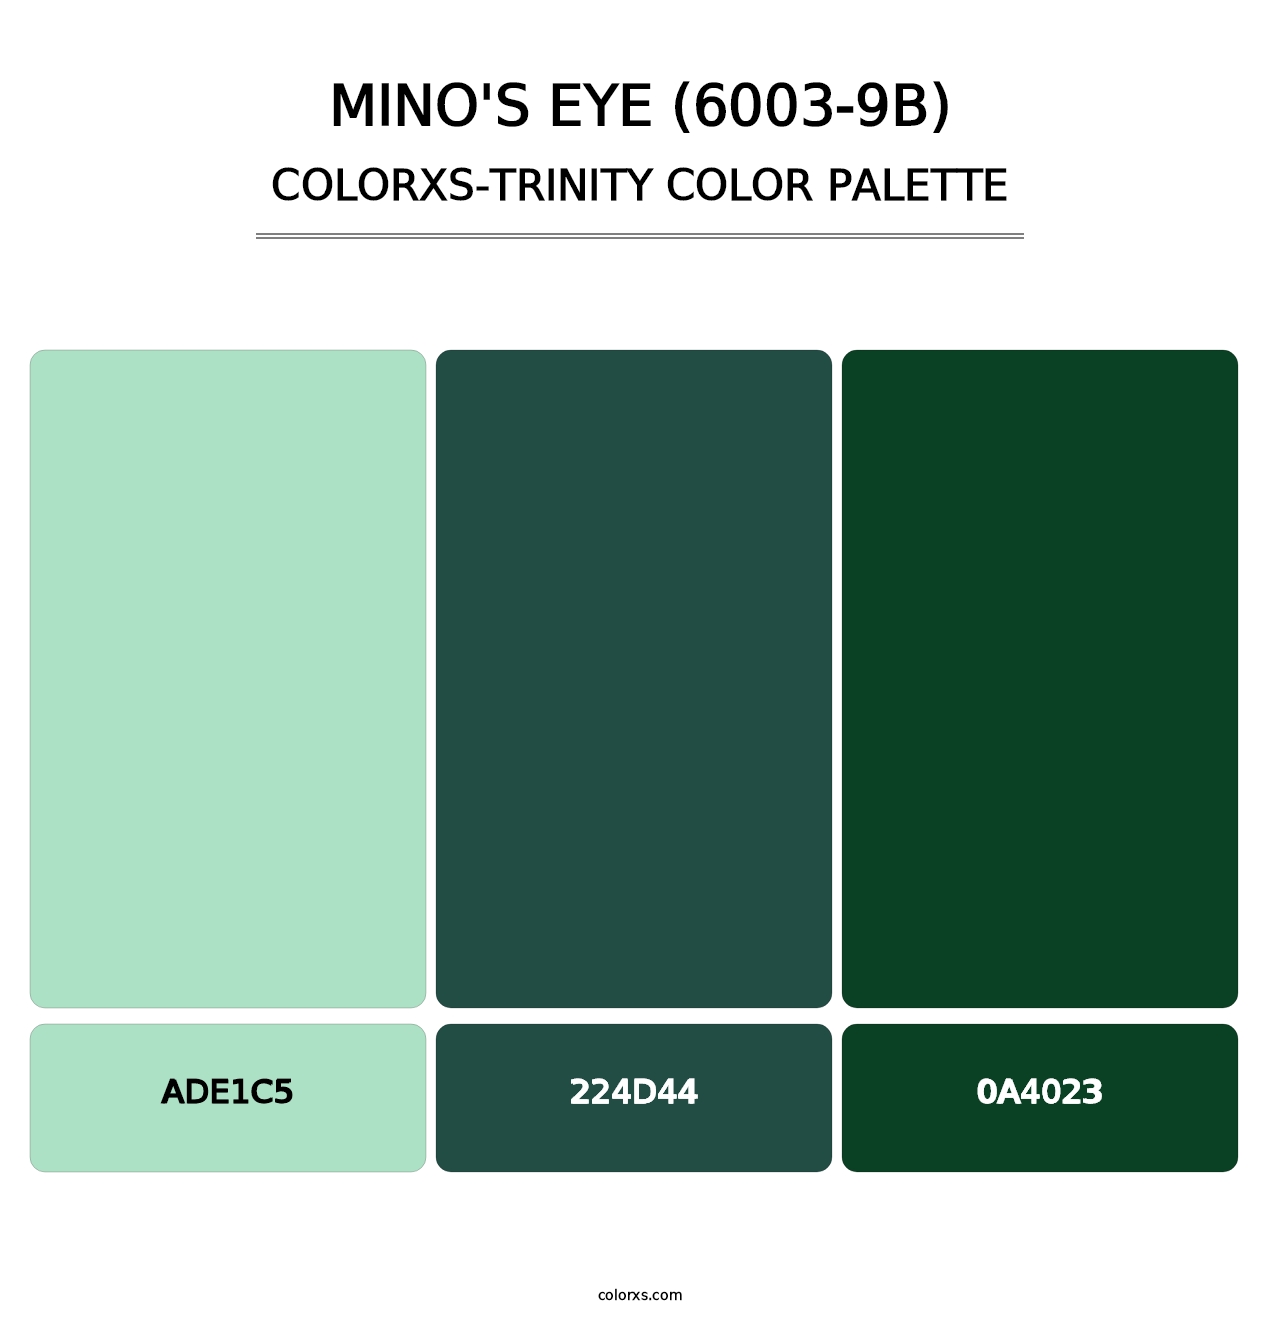 Mino's Eye (6003-9B) - Colorxs Trinity Palette